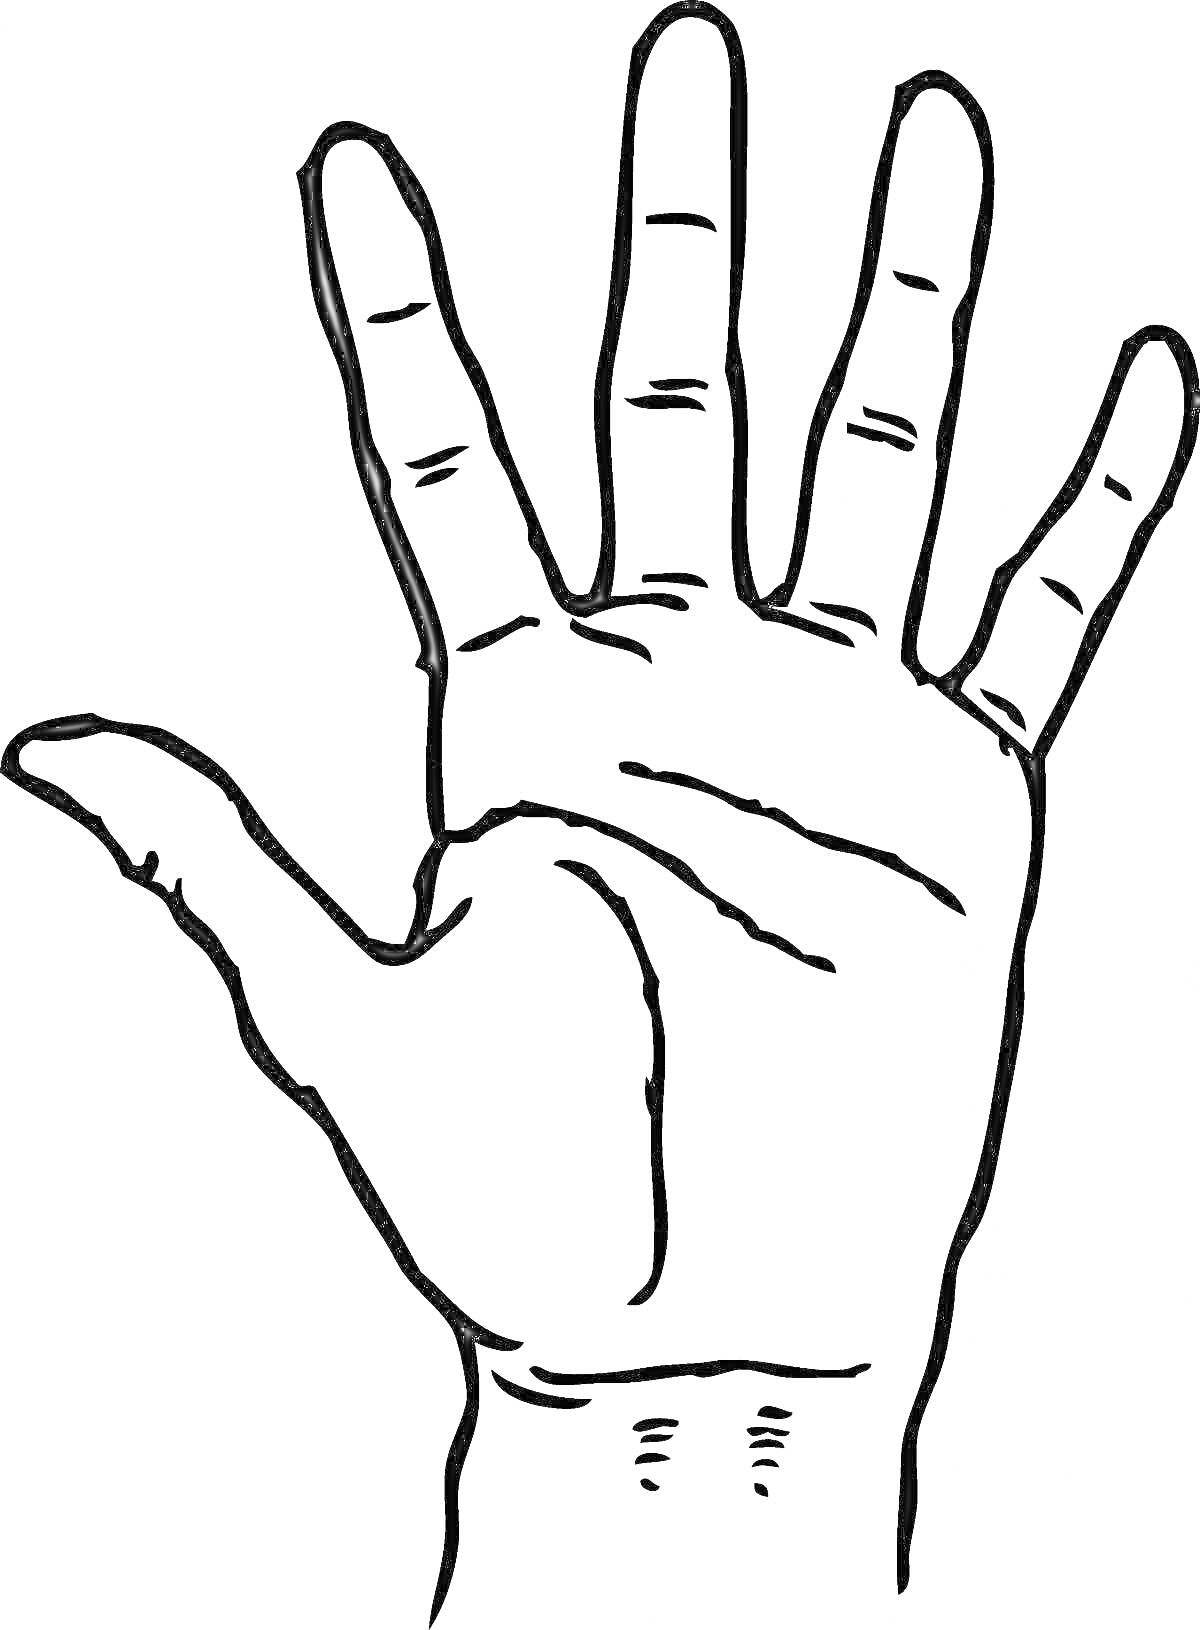 Раскраска Раскраска с изображением ладони руки с пятью пальцами и линиями кожи